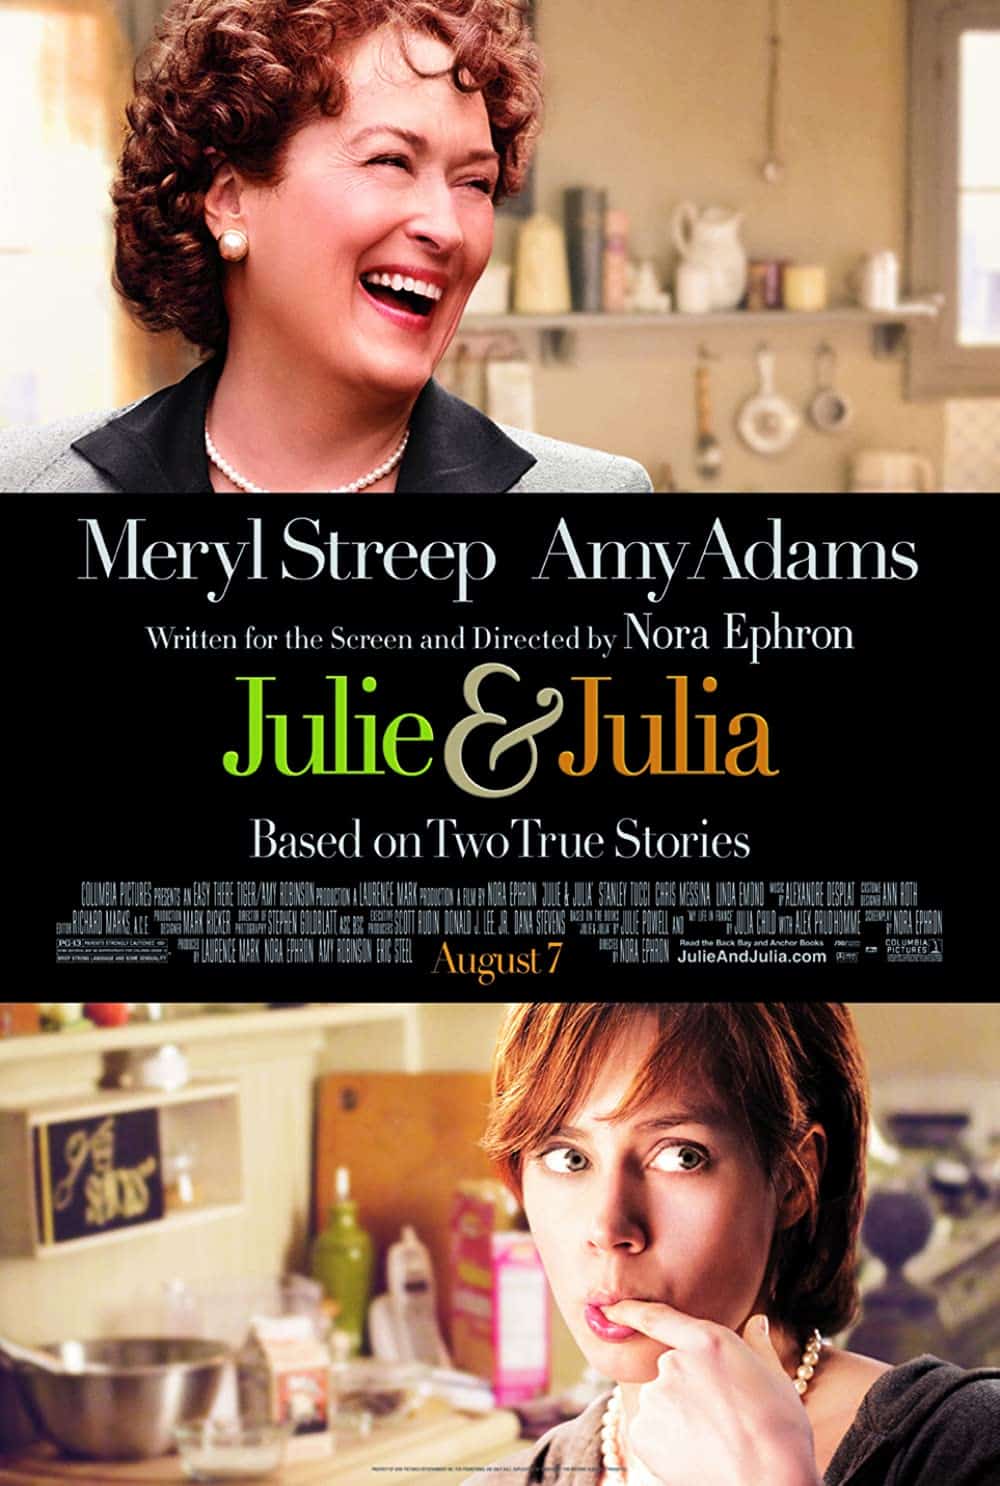 Julie and Julia (2009) Best Food Movies